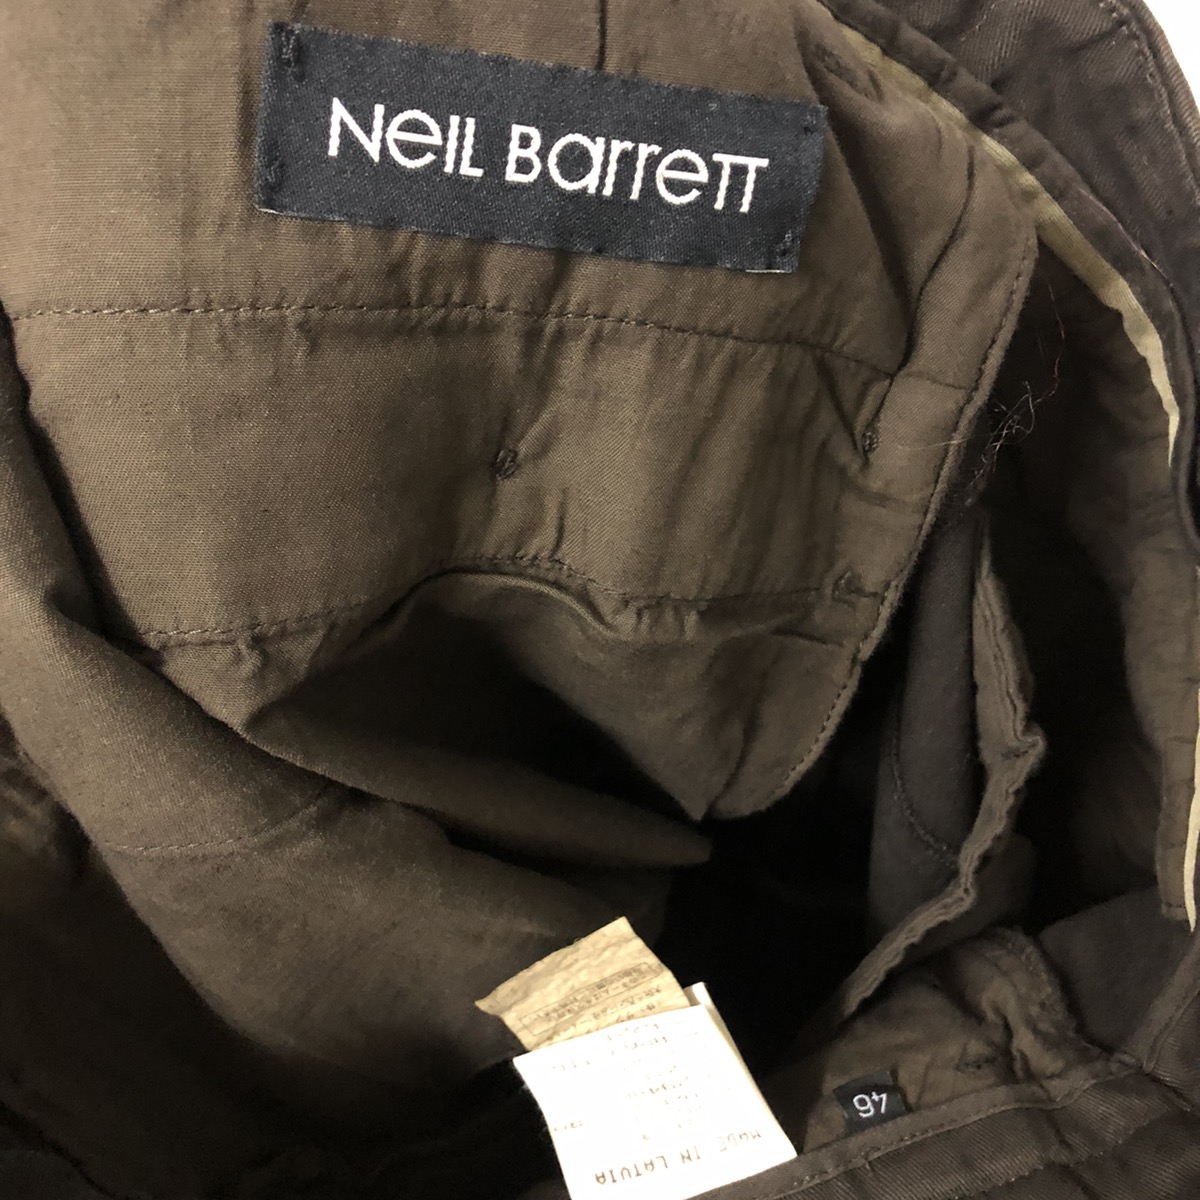 Neil Barrett tactical pants - 17